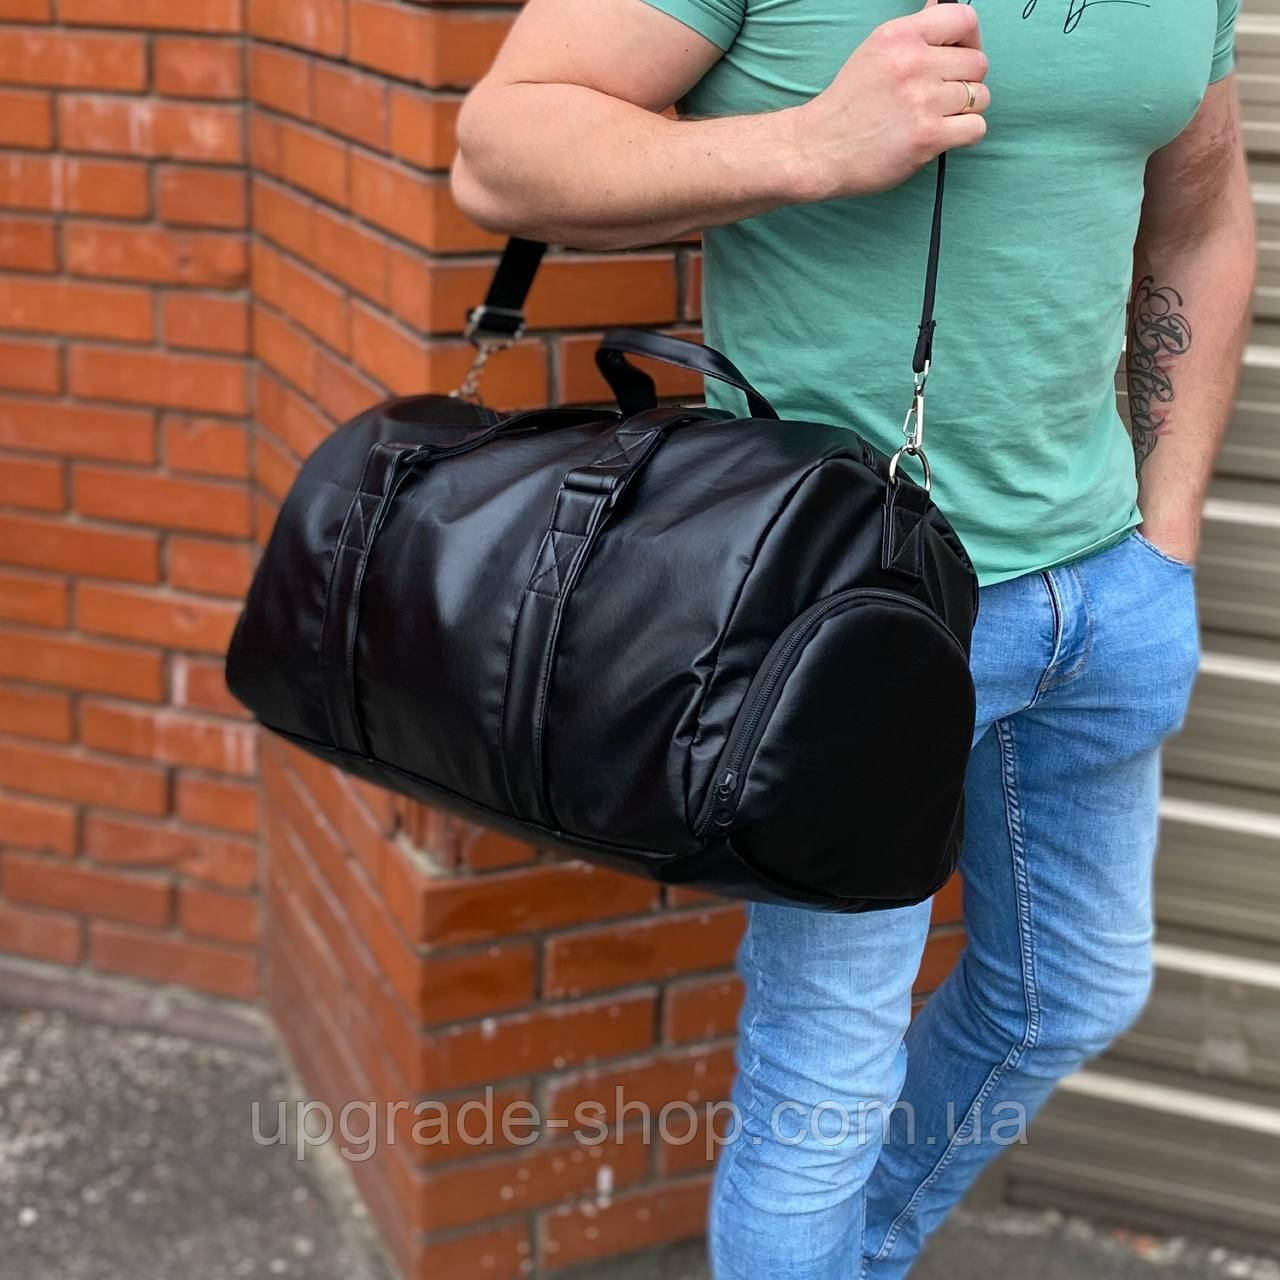 Чоловіча дорожня спортивна сумка з відділенням для взуття чорна PU-екошкіра містка стильна чорний колір